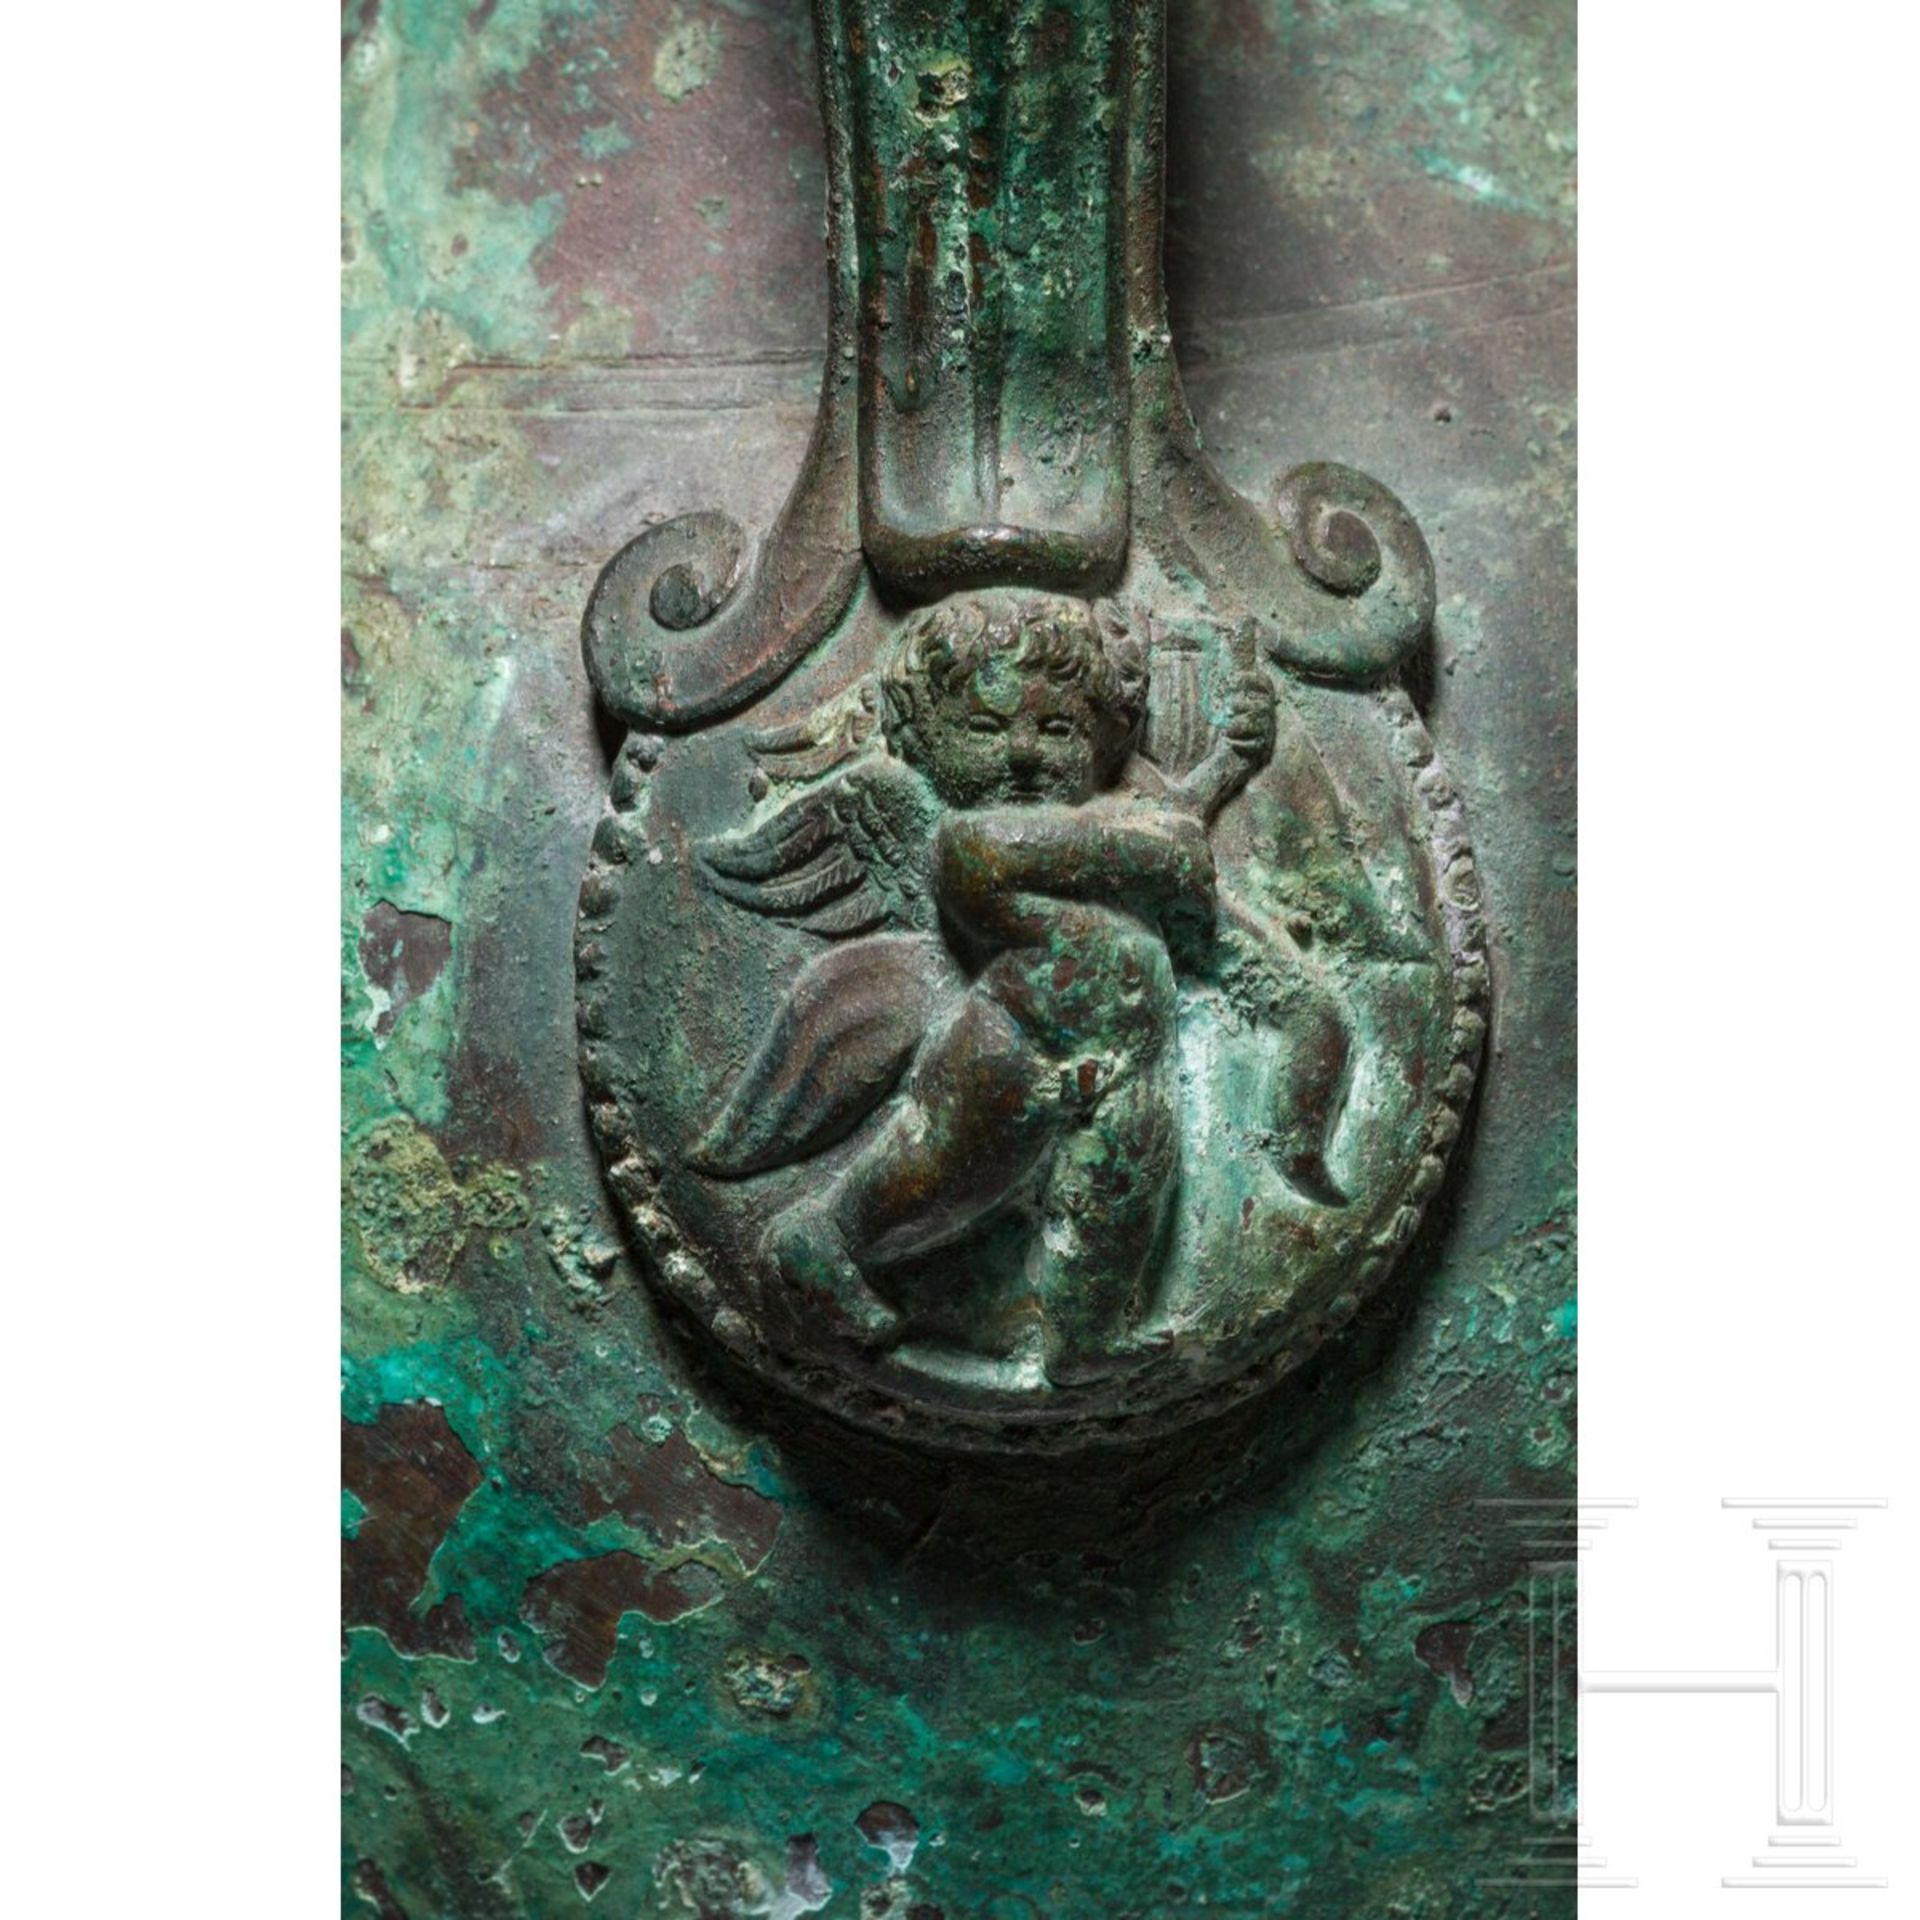 Kopie einer römischen Bronzevase nach dem Vorbild von Bronzegeschirr des 1. Jhdts. aus den Vesuvstät - Bild 4 aus 5